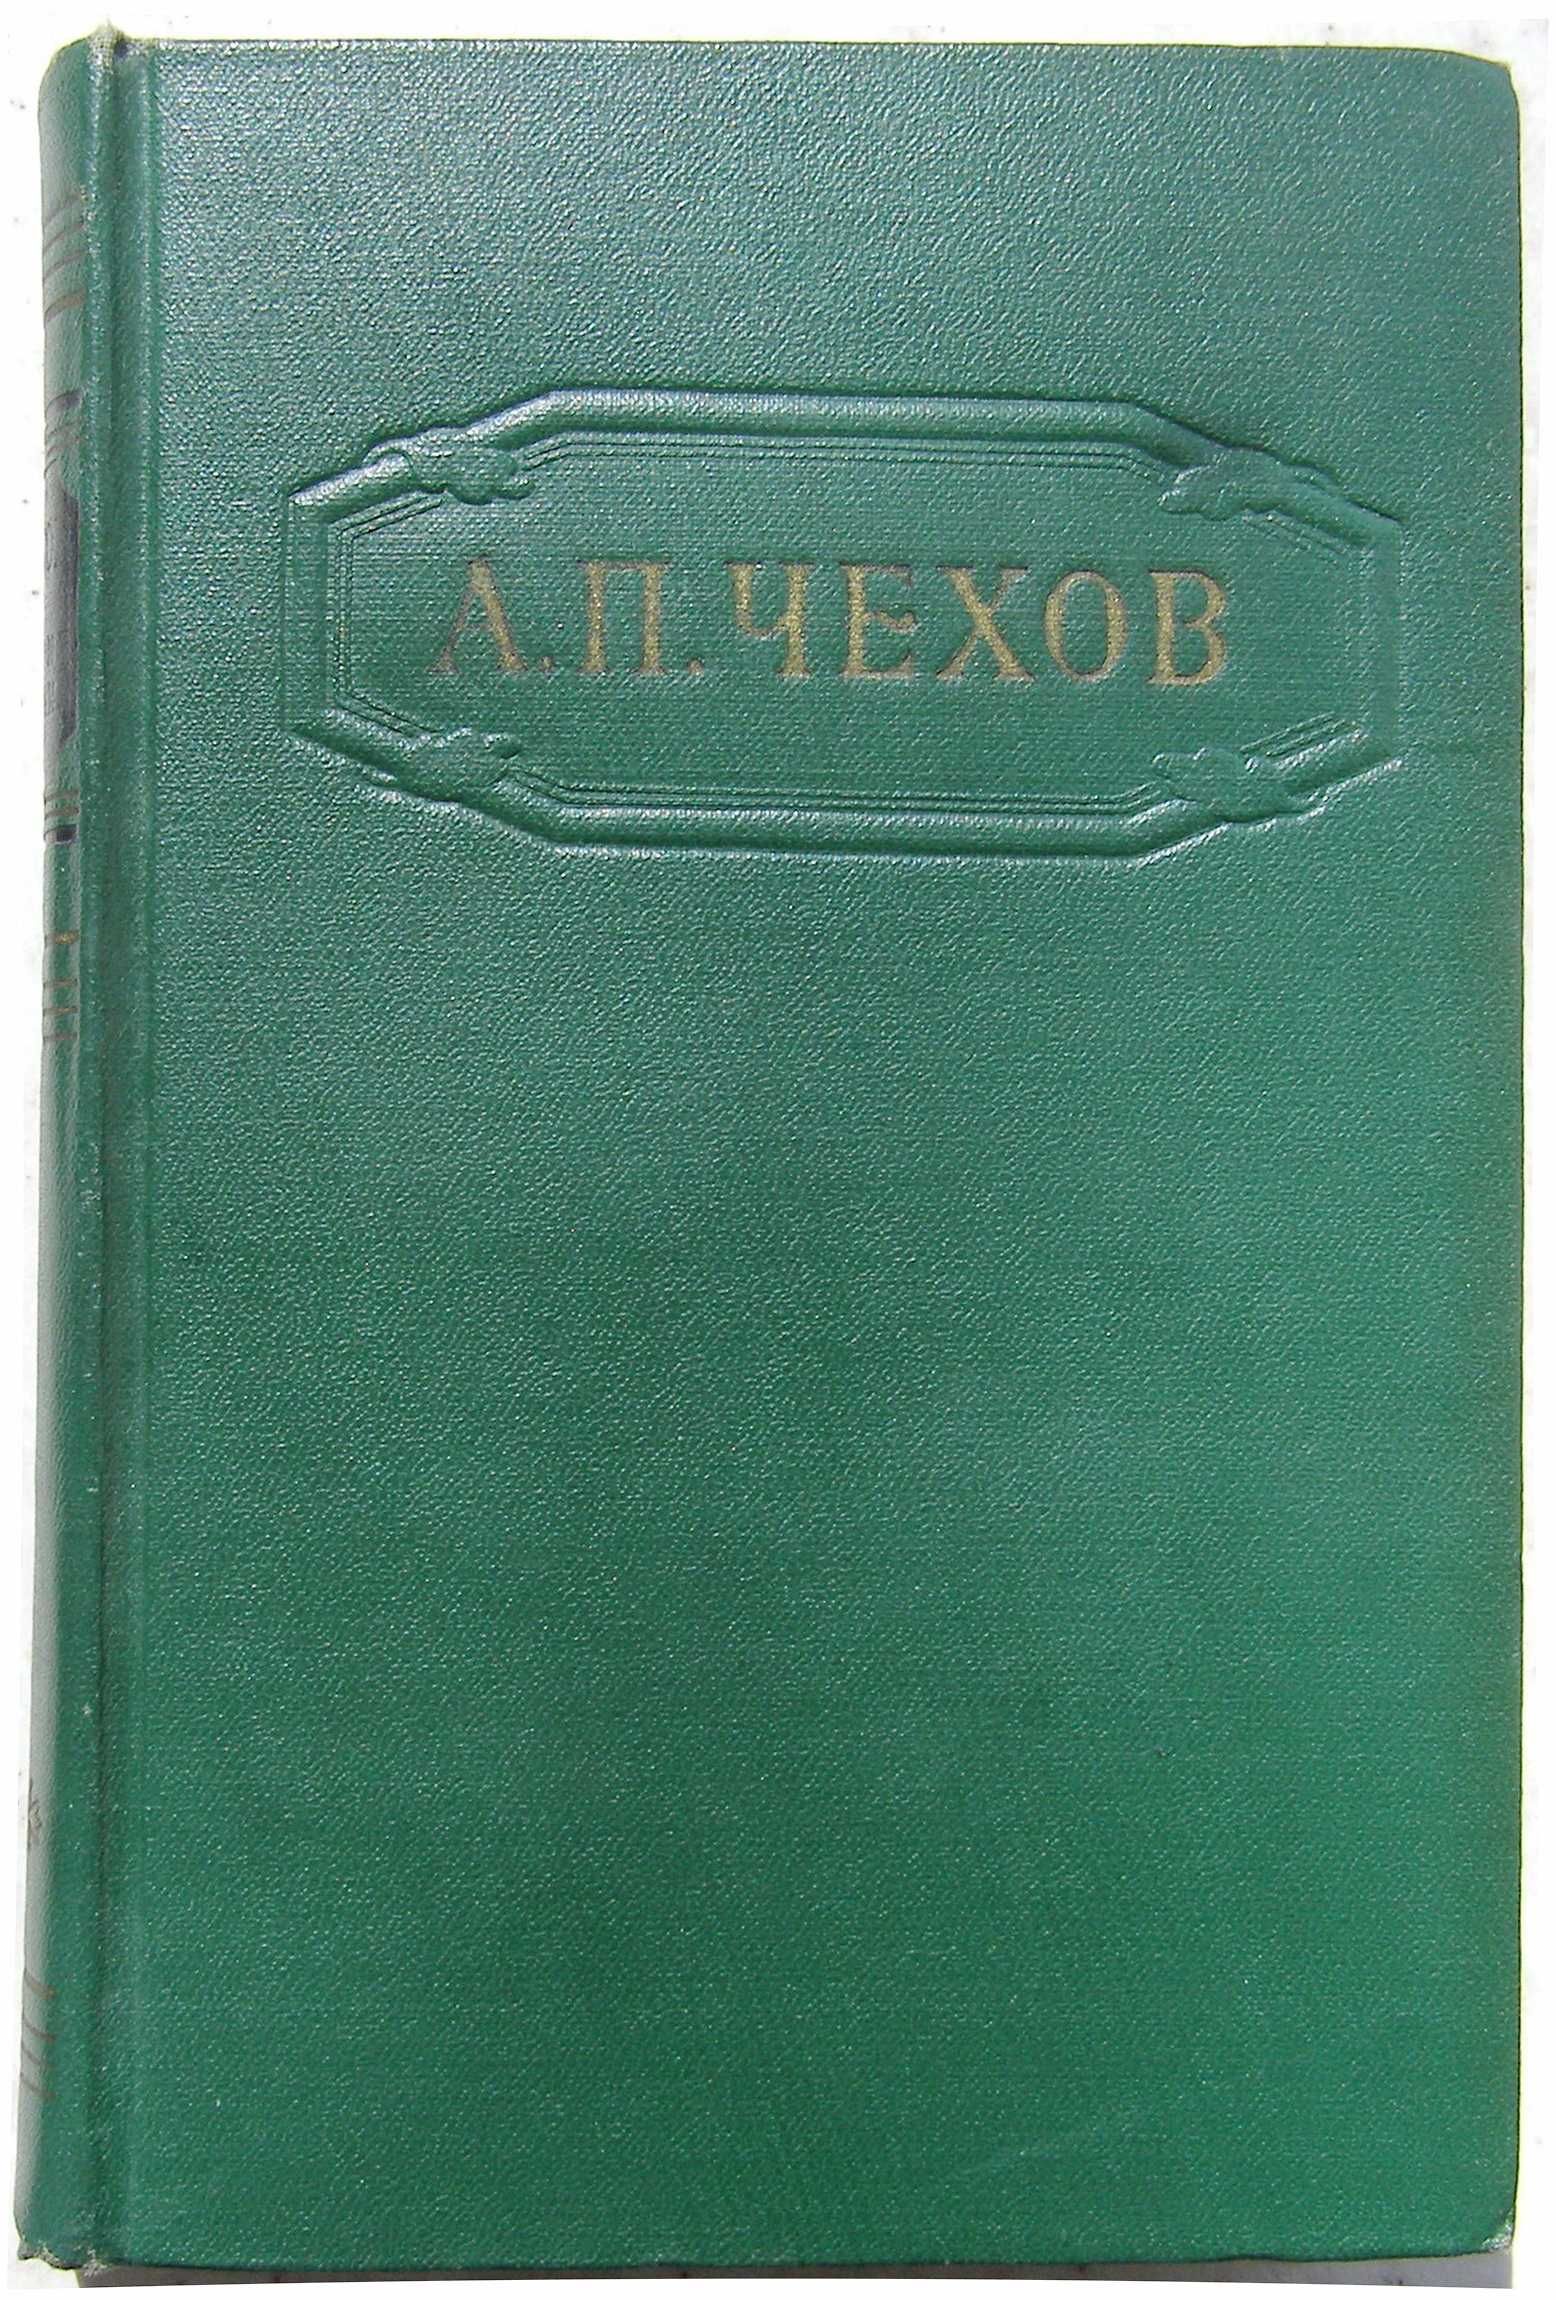 Чехов. Собрание сочинений в 12 томах. 1954 - 57 г.г. издания